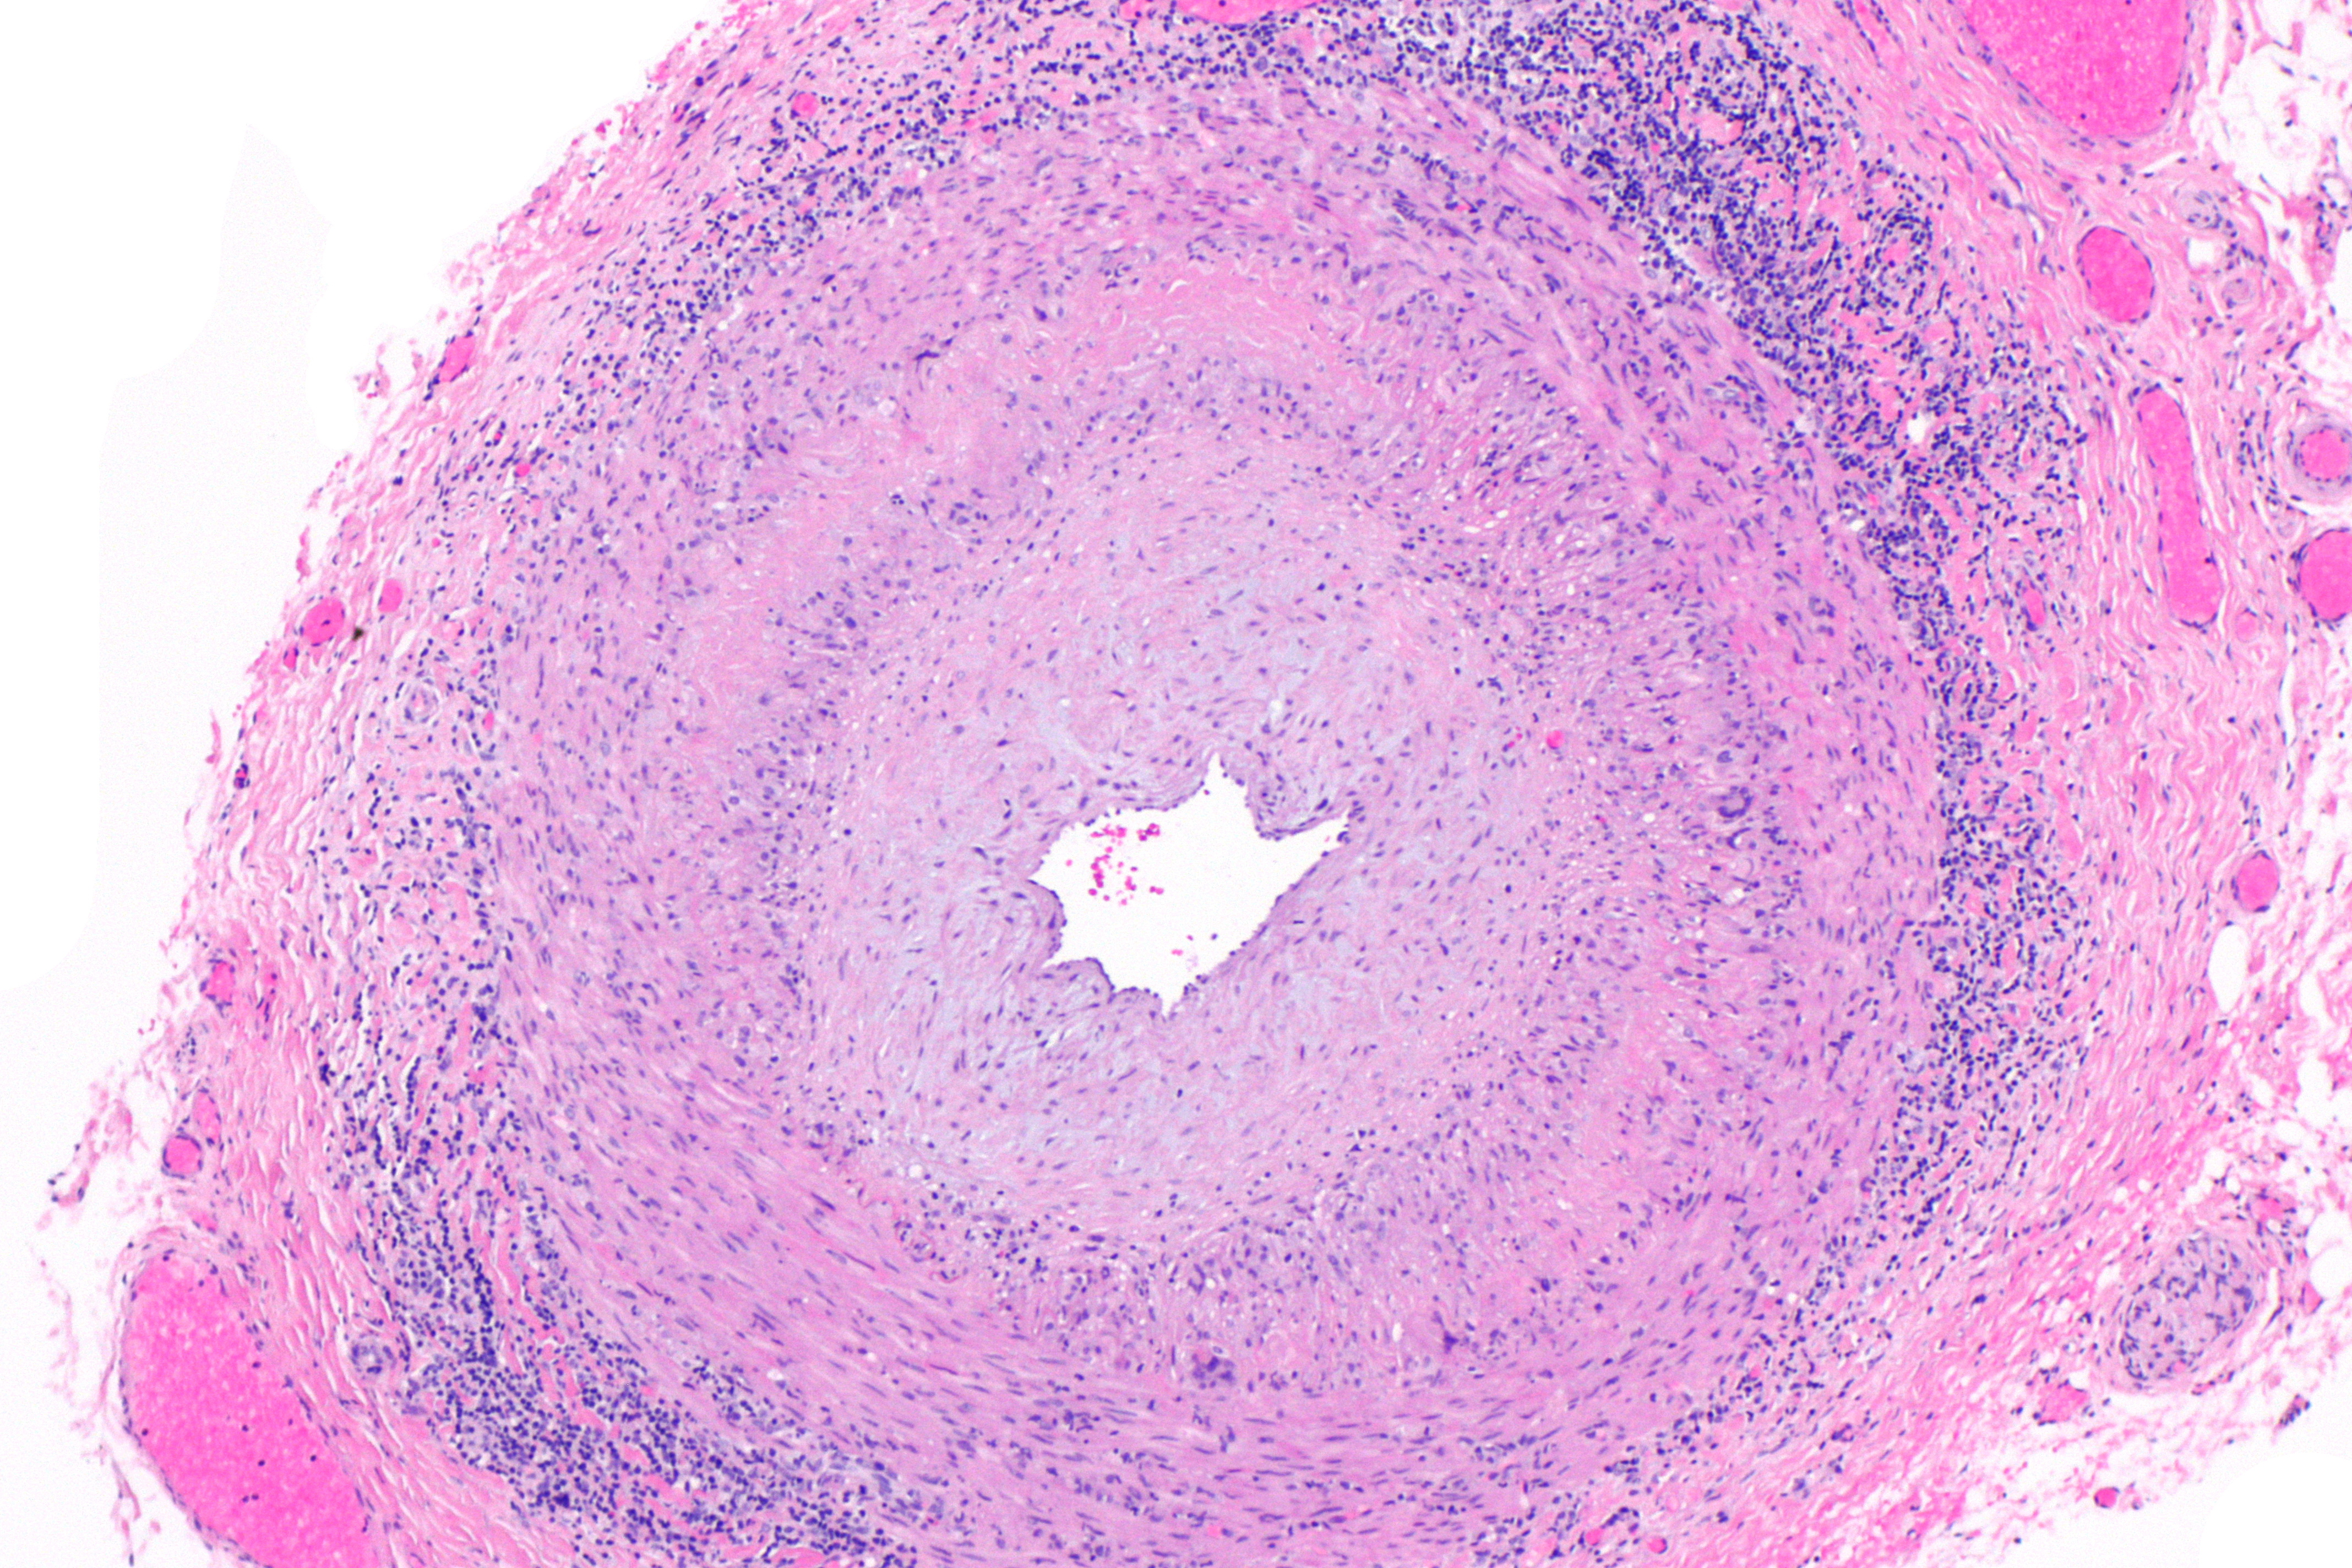 File:Giant cell arteritis -- low mag.jpg